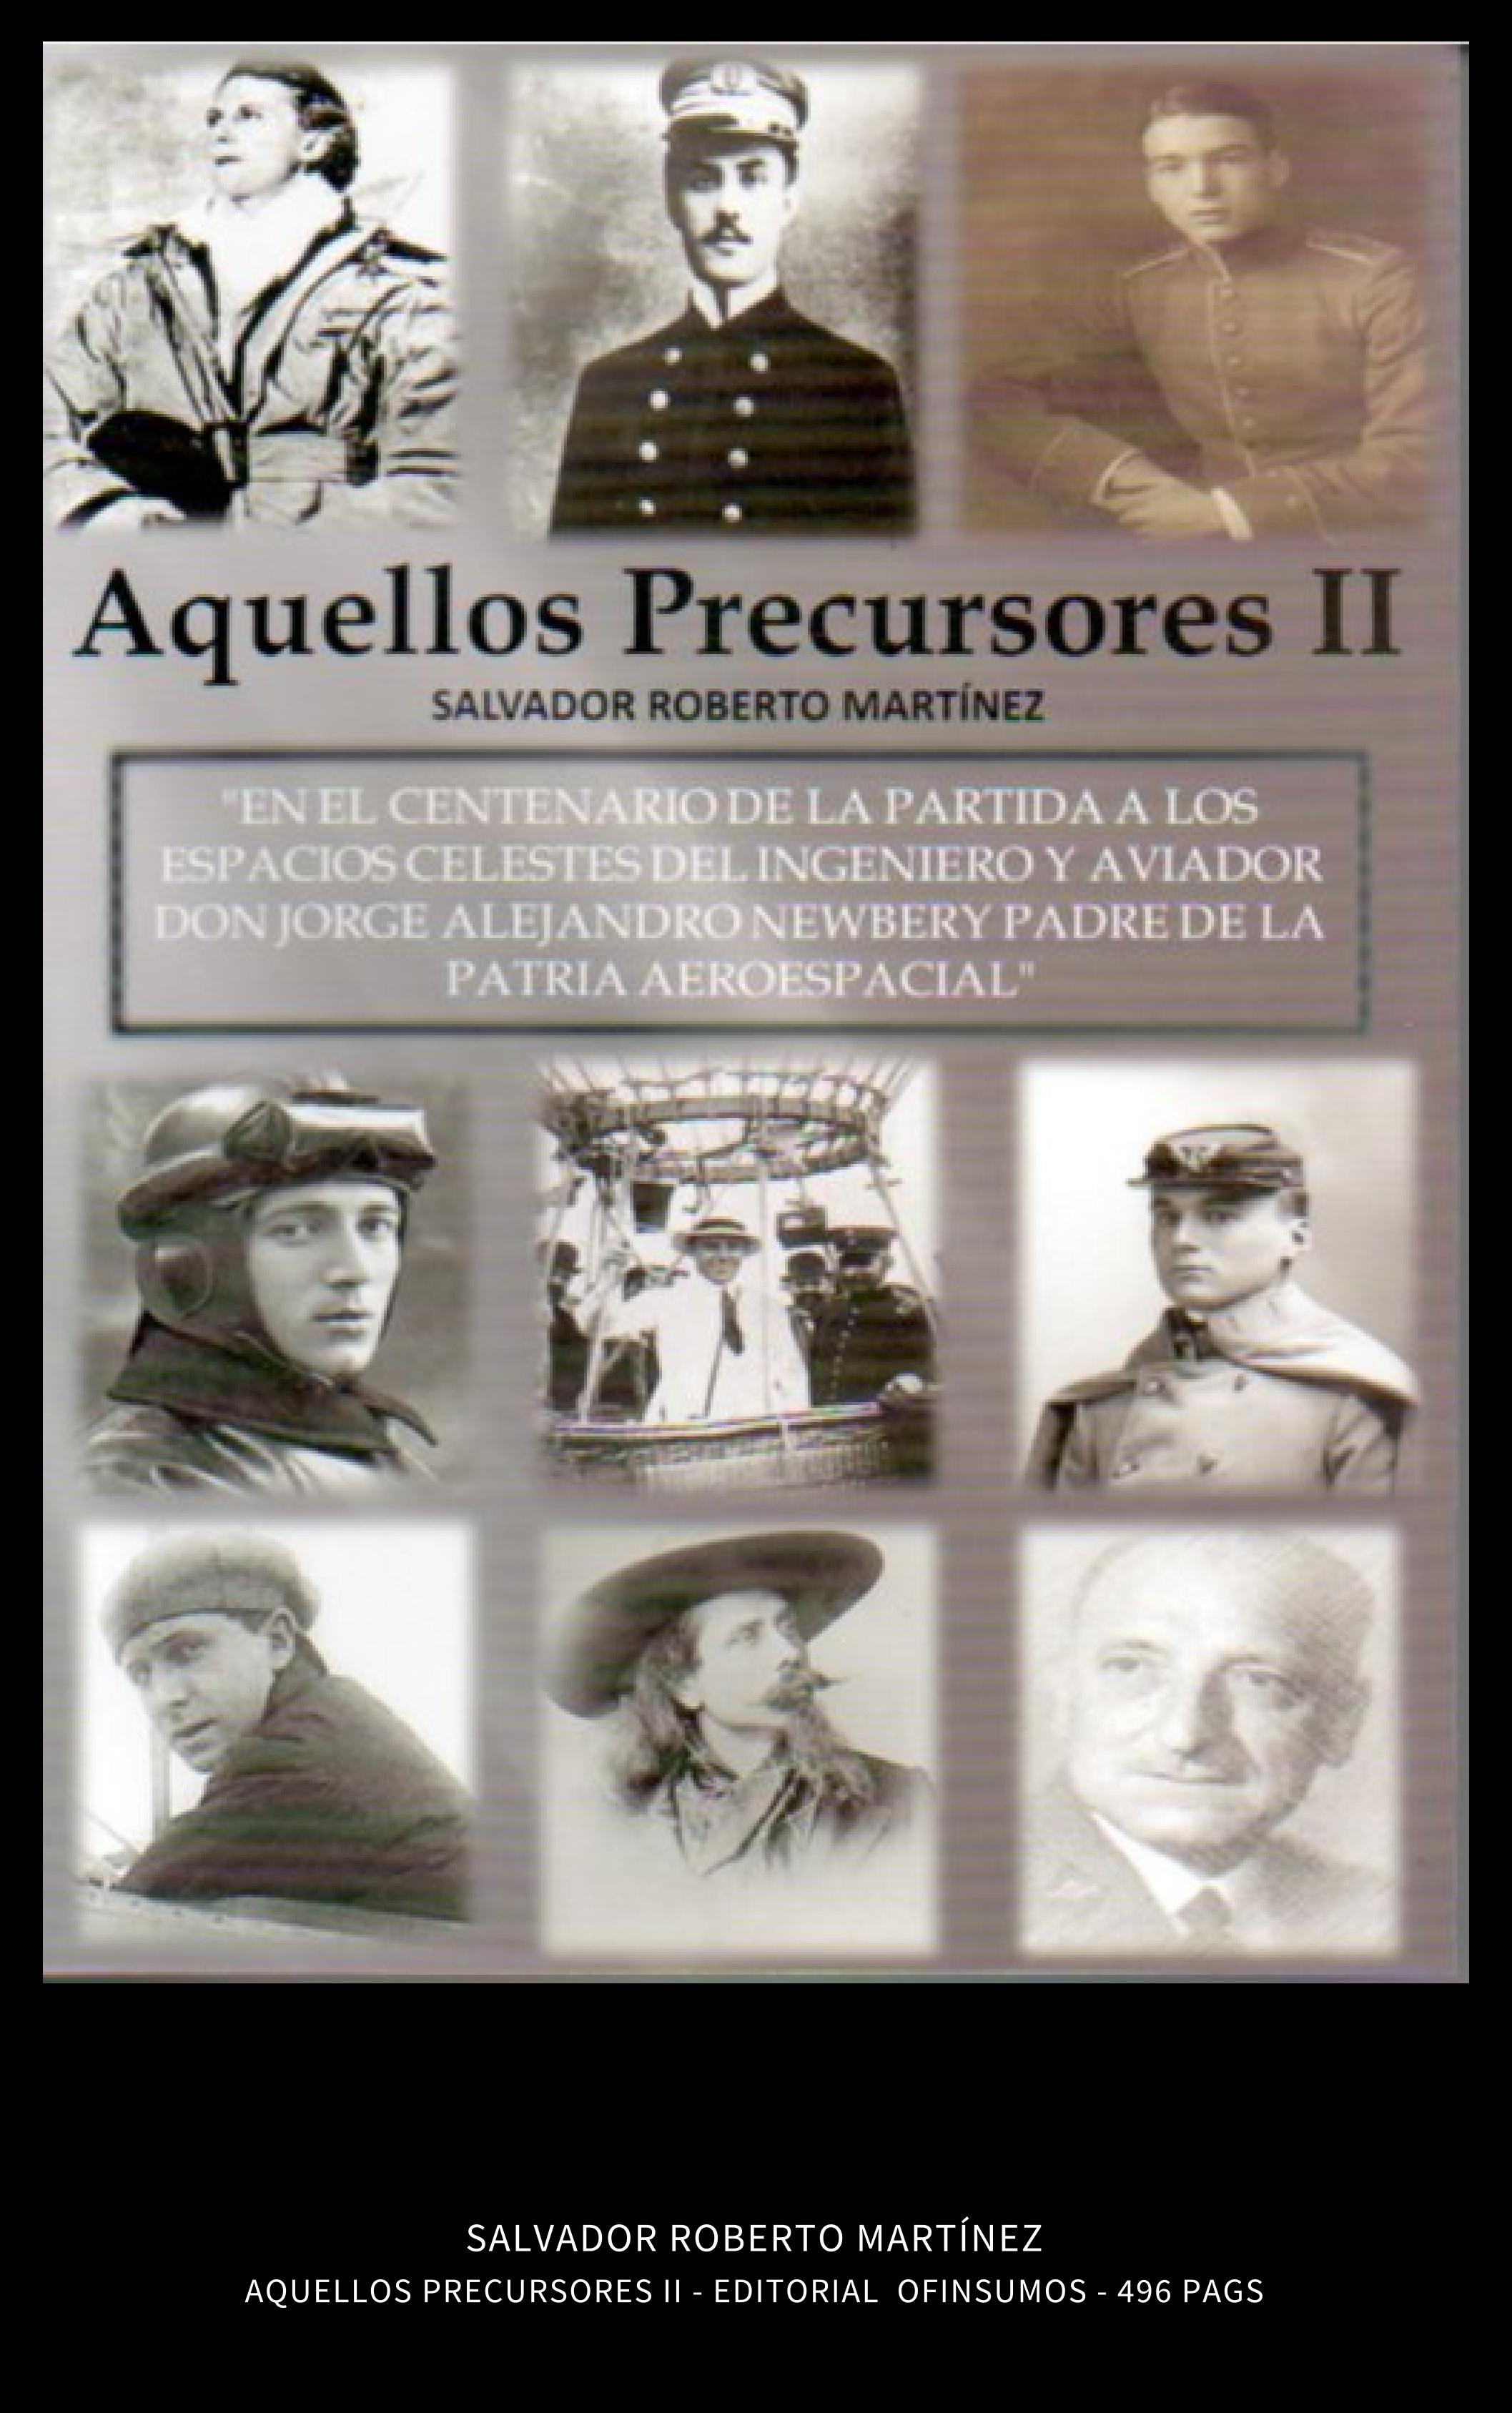 Salvador Roberto Martínez - AQUELLOS PRECURSORES II - Editorial Ofinsumos S.A. - Buenos Aires - 2016